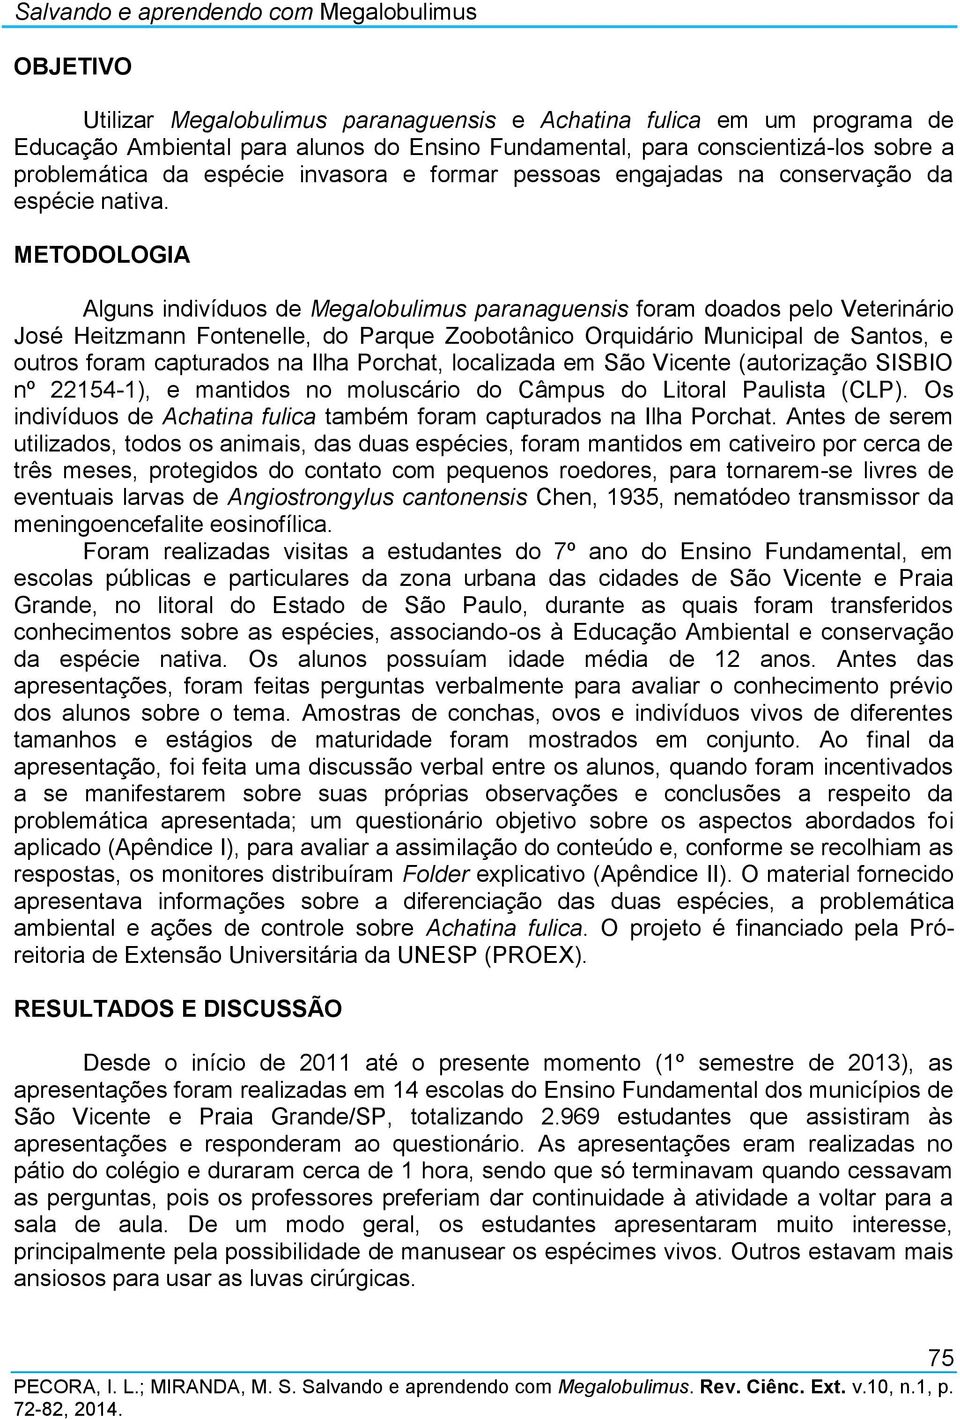 METODOLOGIA Alguns indivíduos de Megalobulimus paranaguensis foram doados pelo Veterinário José Heitzmann Fontenelle, do Parque Zoobotânico Orquidário Municipal de Santos, e outros foram capturados